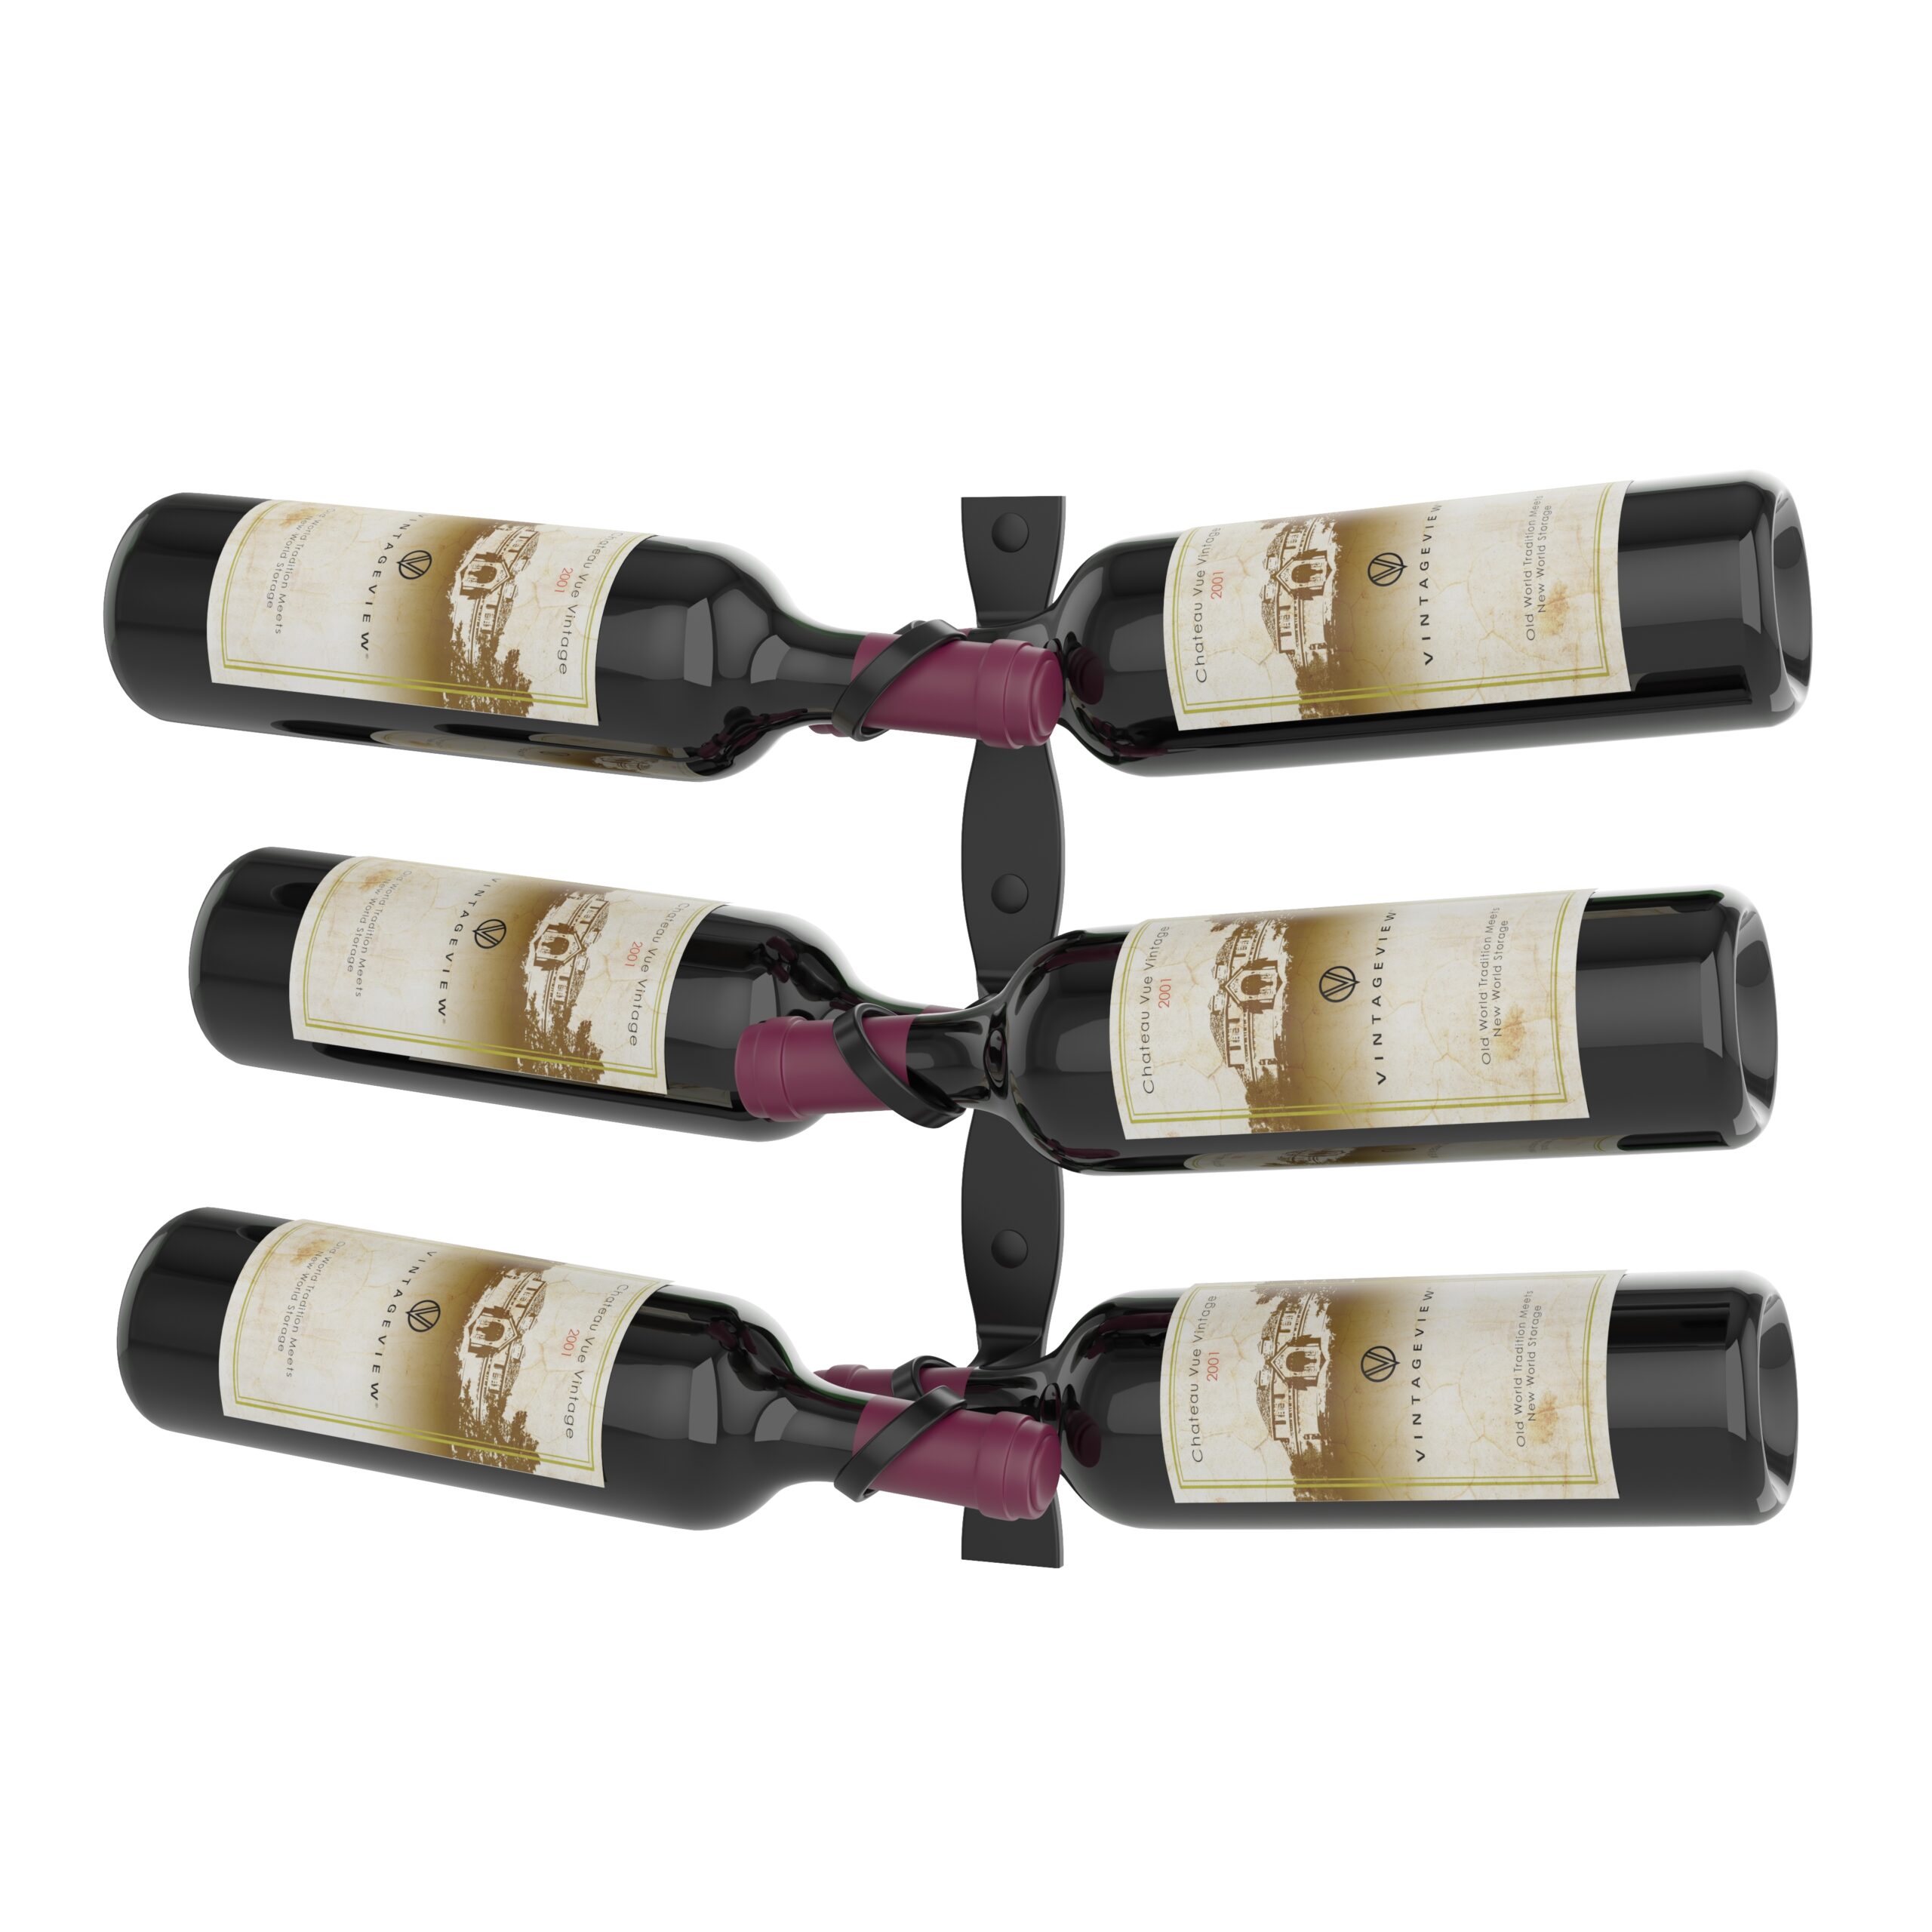 Soportes para botellas de vino Helix HX-15-DL-K